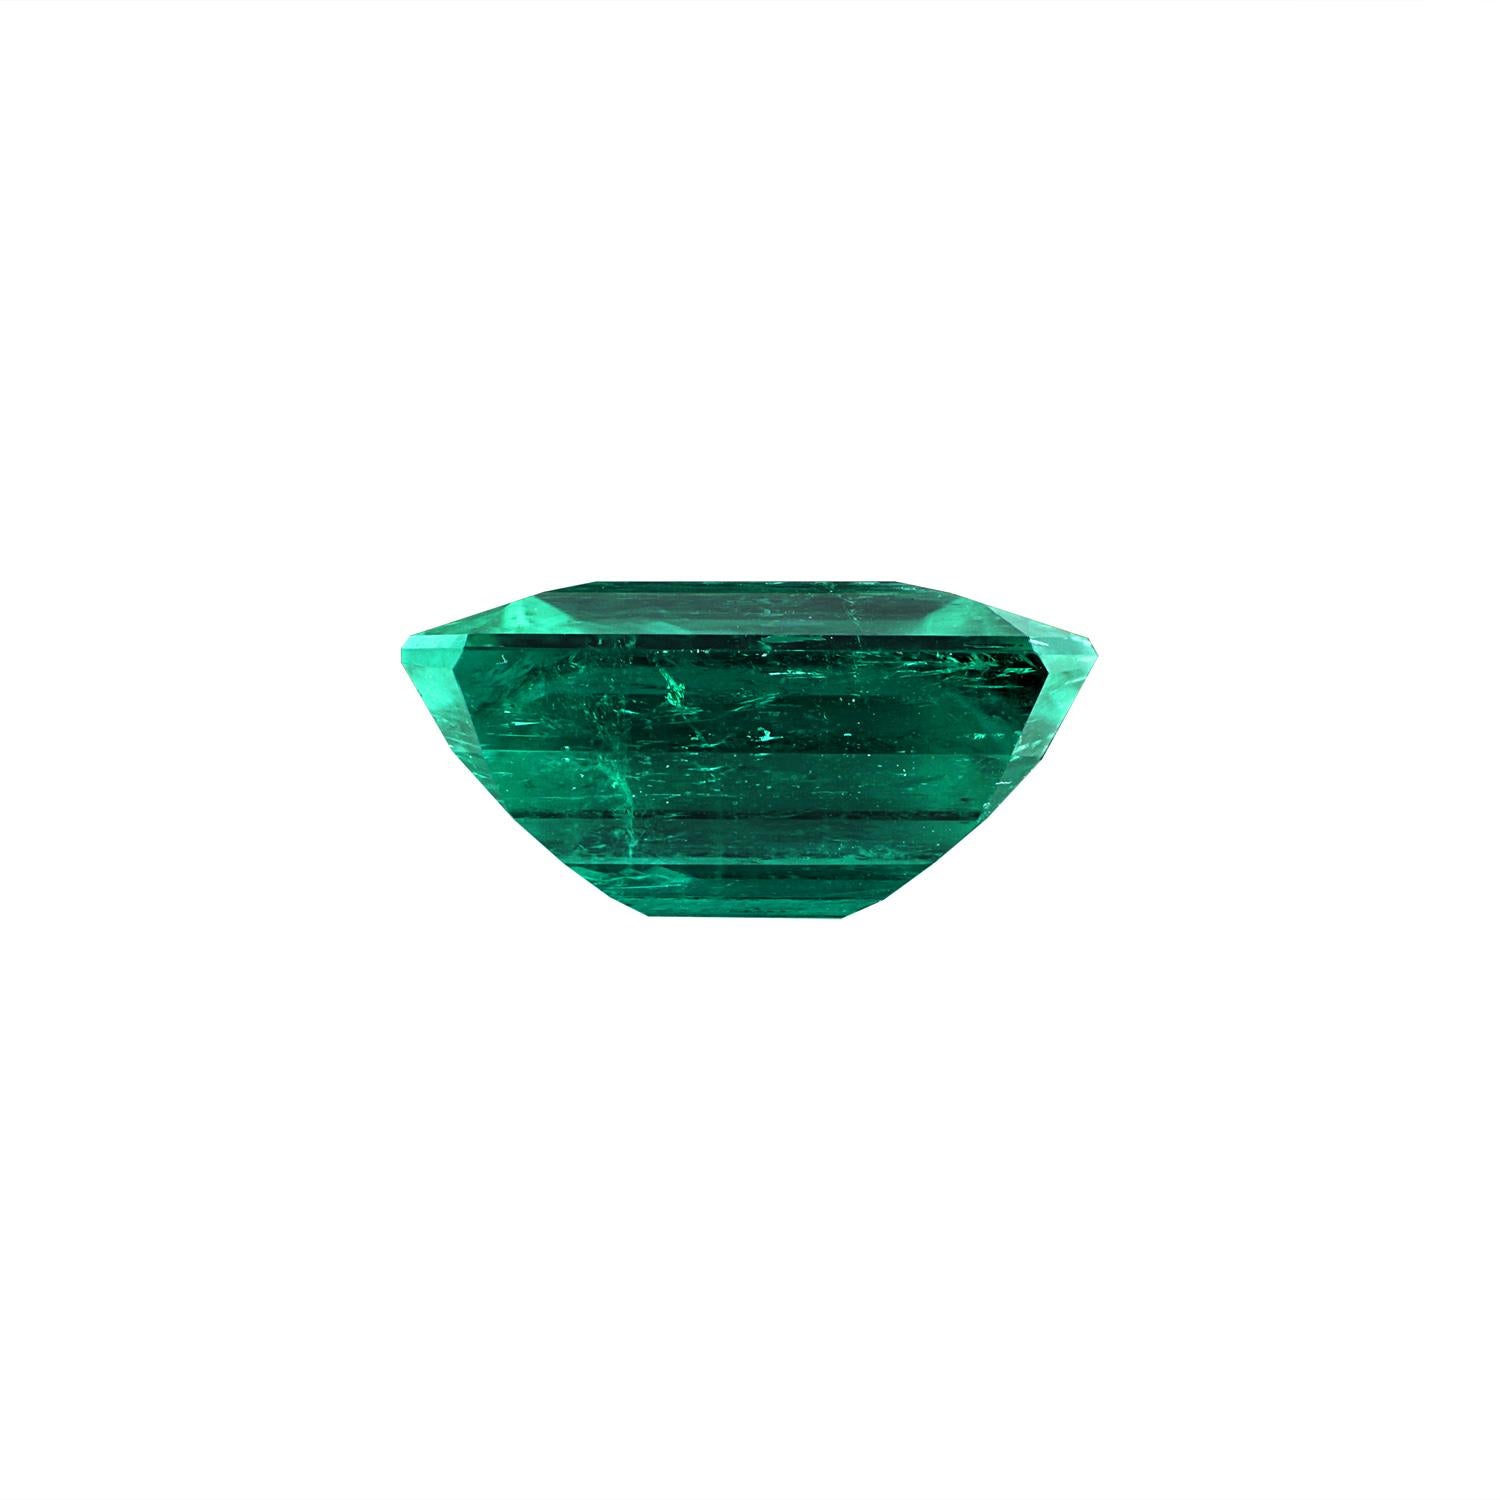 Muzo Emerald Loose Stone

Size: Emerald: 3.56 ct.

Origin: Muzo, Colombia

Color: Vivid Green 

Treatment: Non-oil

GRS Certificate report